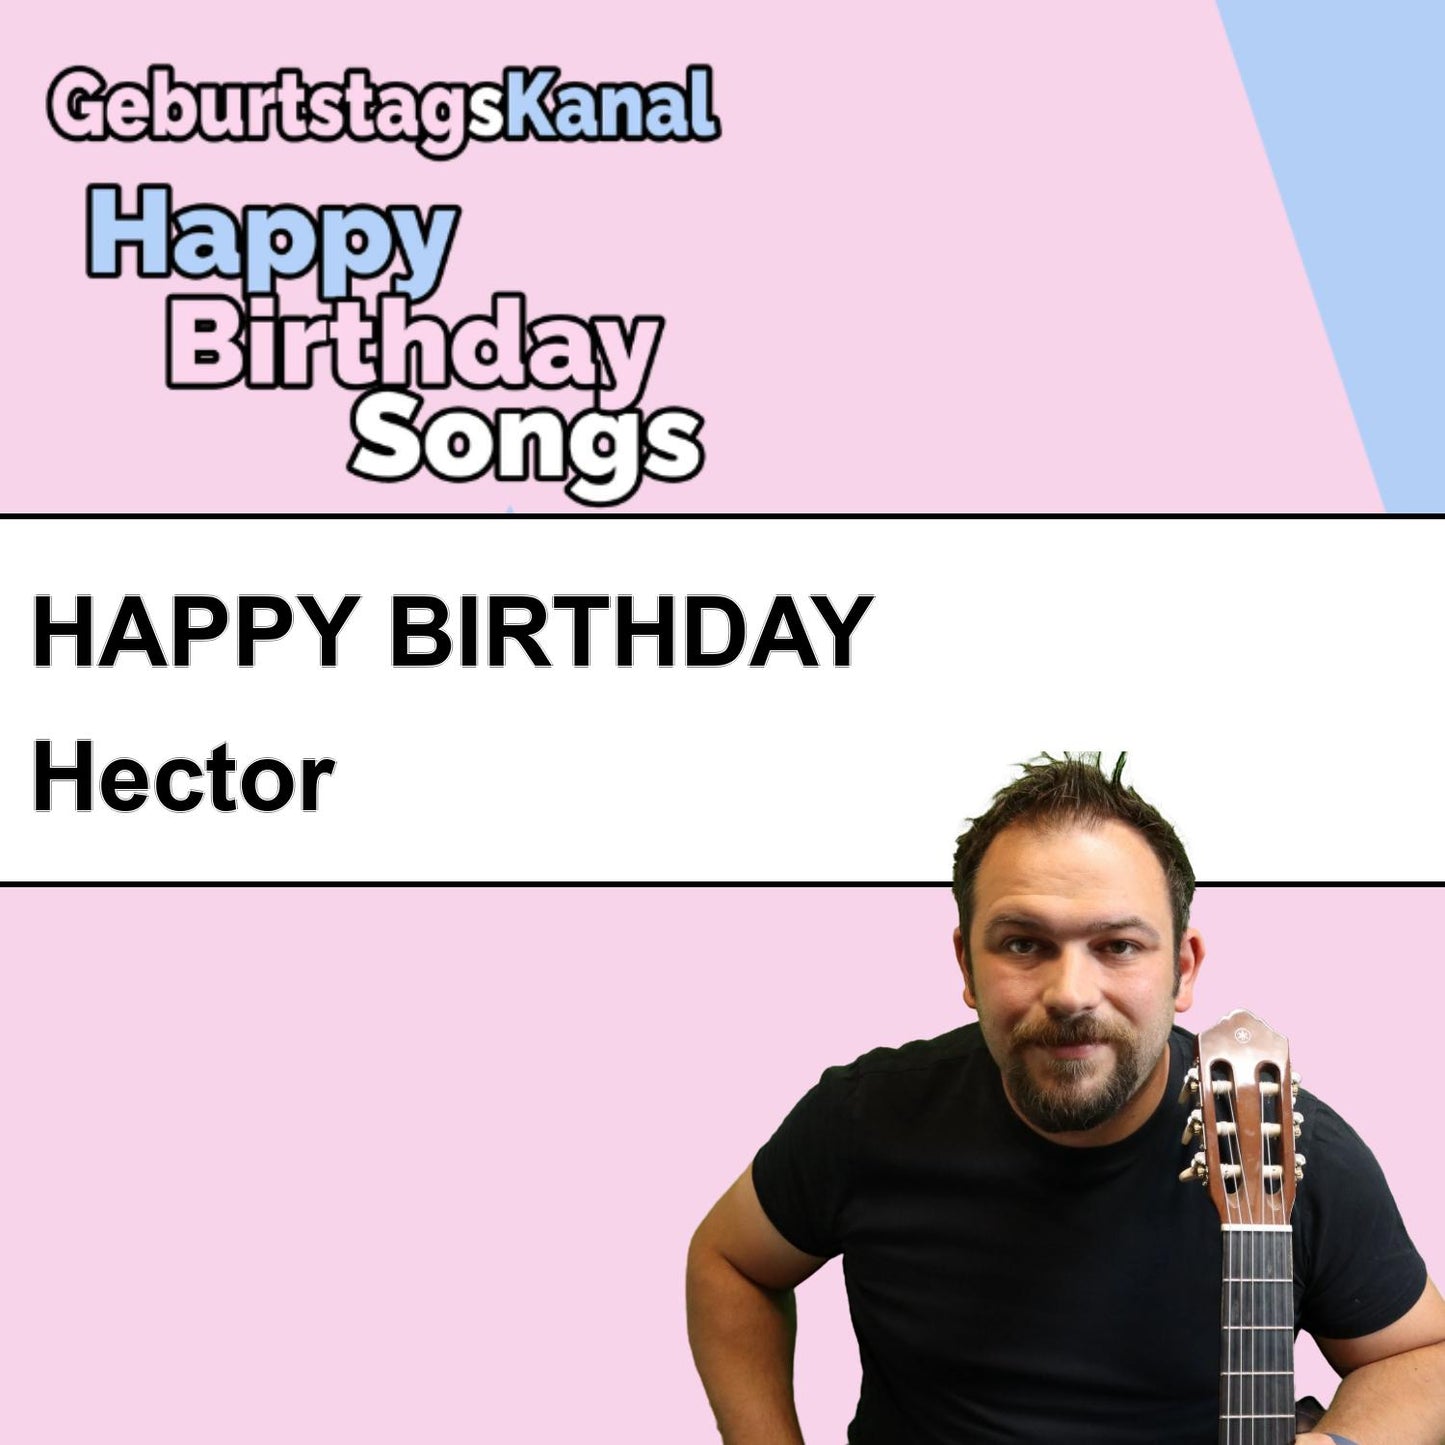 Produktbild Happy Birthday to you Hector mit Wunschgrußbotschaft